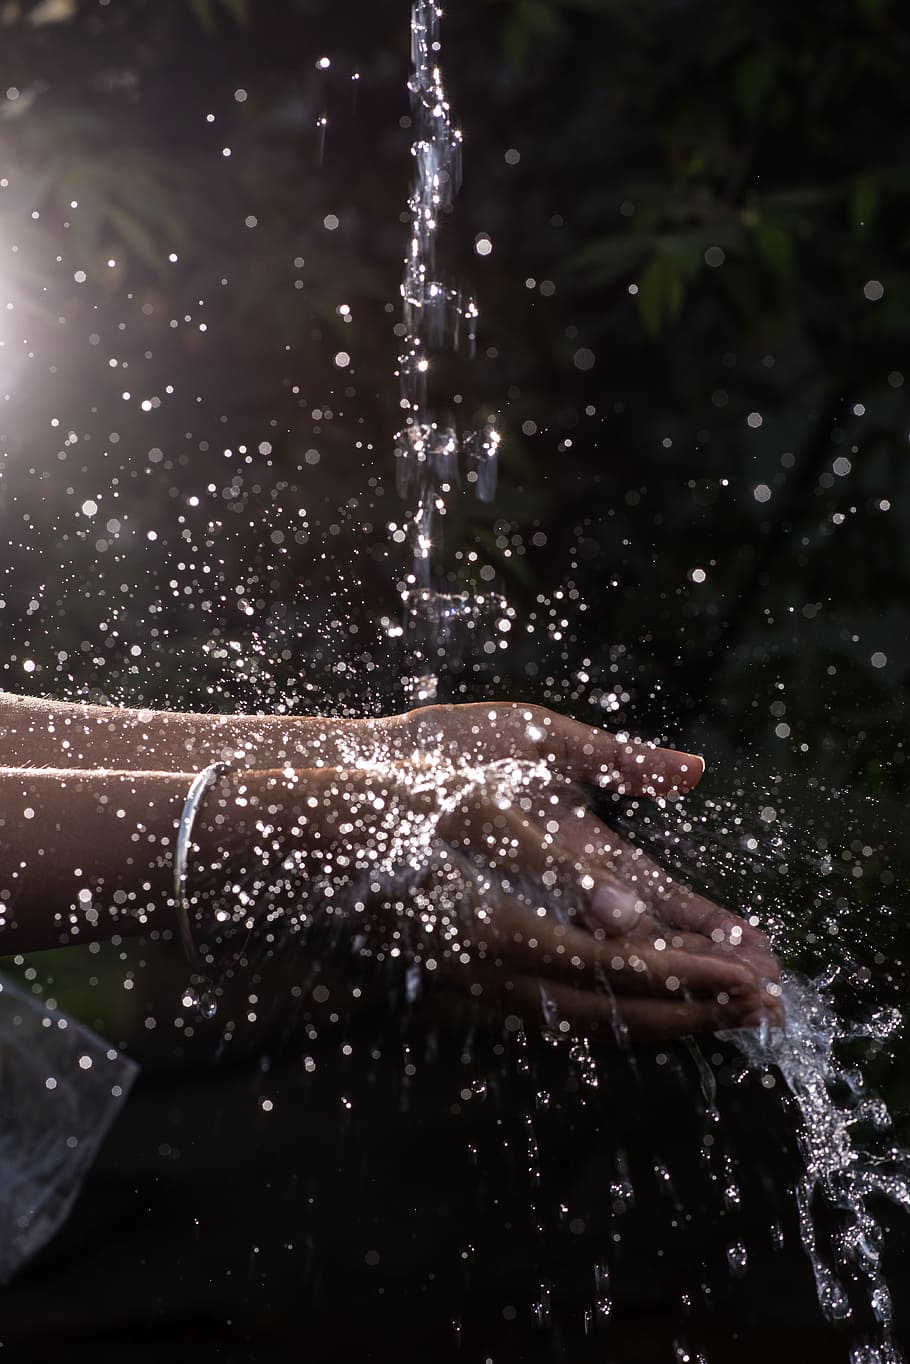 Human Hand Under Pouring Water, refreshing, splash, splashing